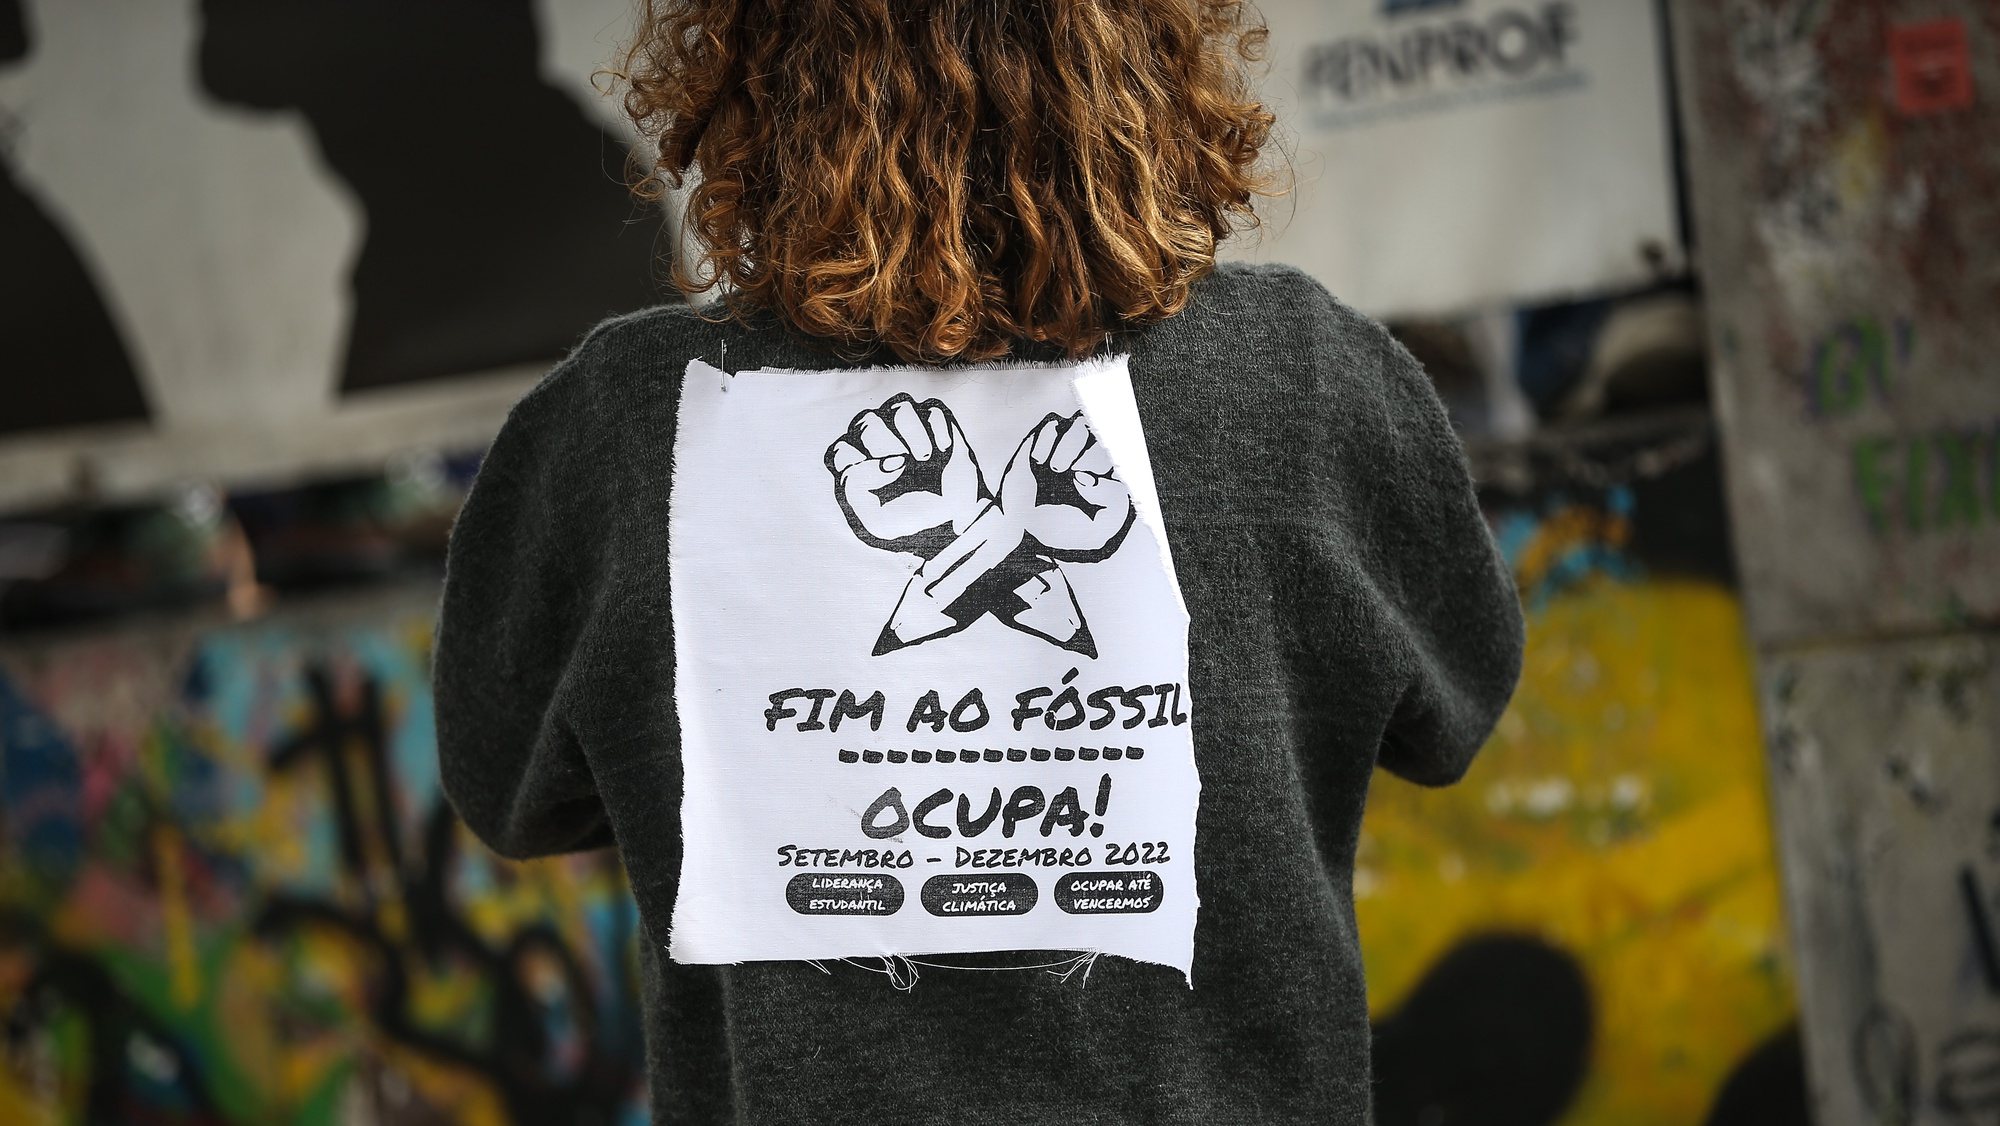 Alunos da escola secundária António Arroio protestam pelo fim dos combustíveis fósseis a nível internacional numa ação que prevê a ocupação de escolas secundárias e universidades de forma pacifica, em Lisboa, 07 de novembro de 2022. RODRIGO ANTUNES/LUSA